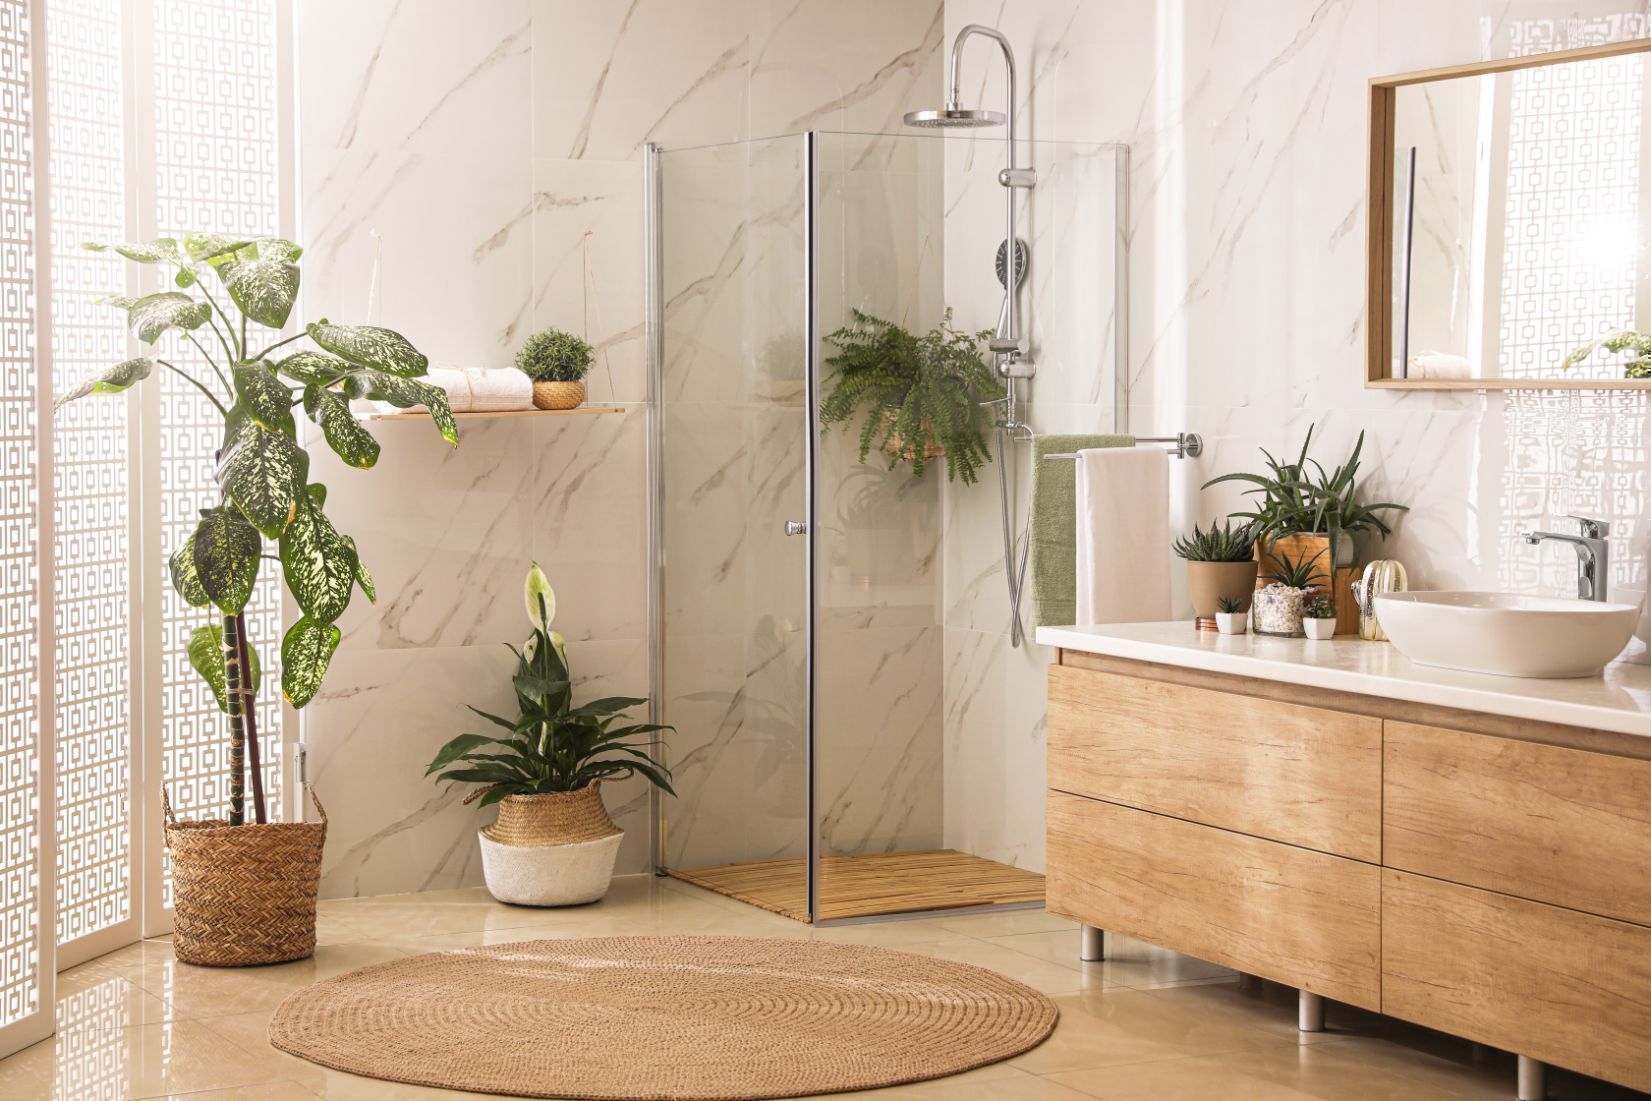 Bathroom Renovation - Simple Way To Increase Home Value